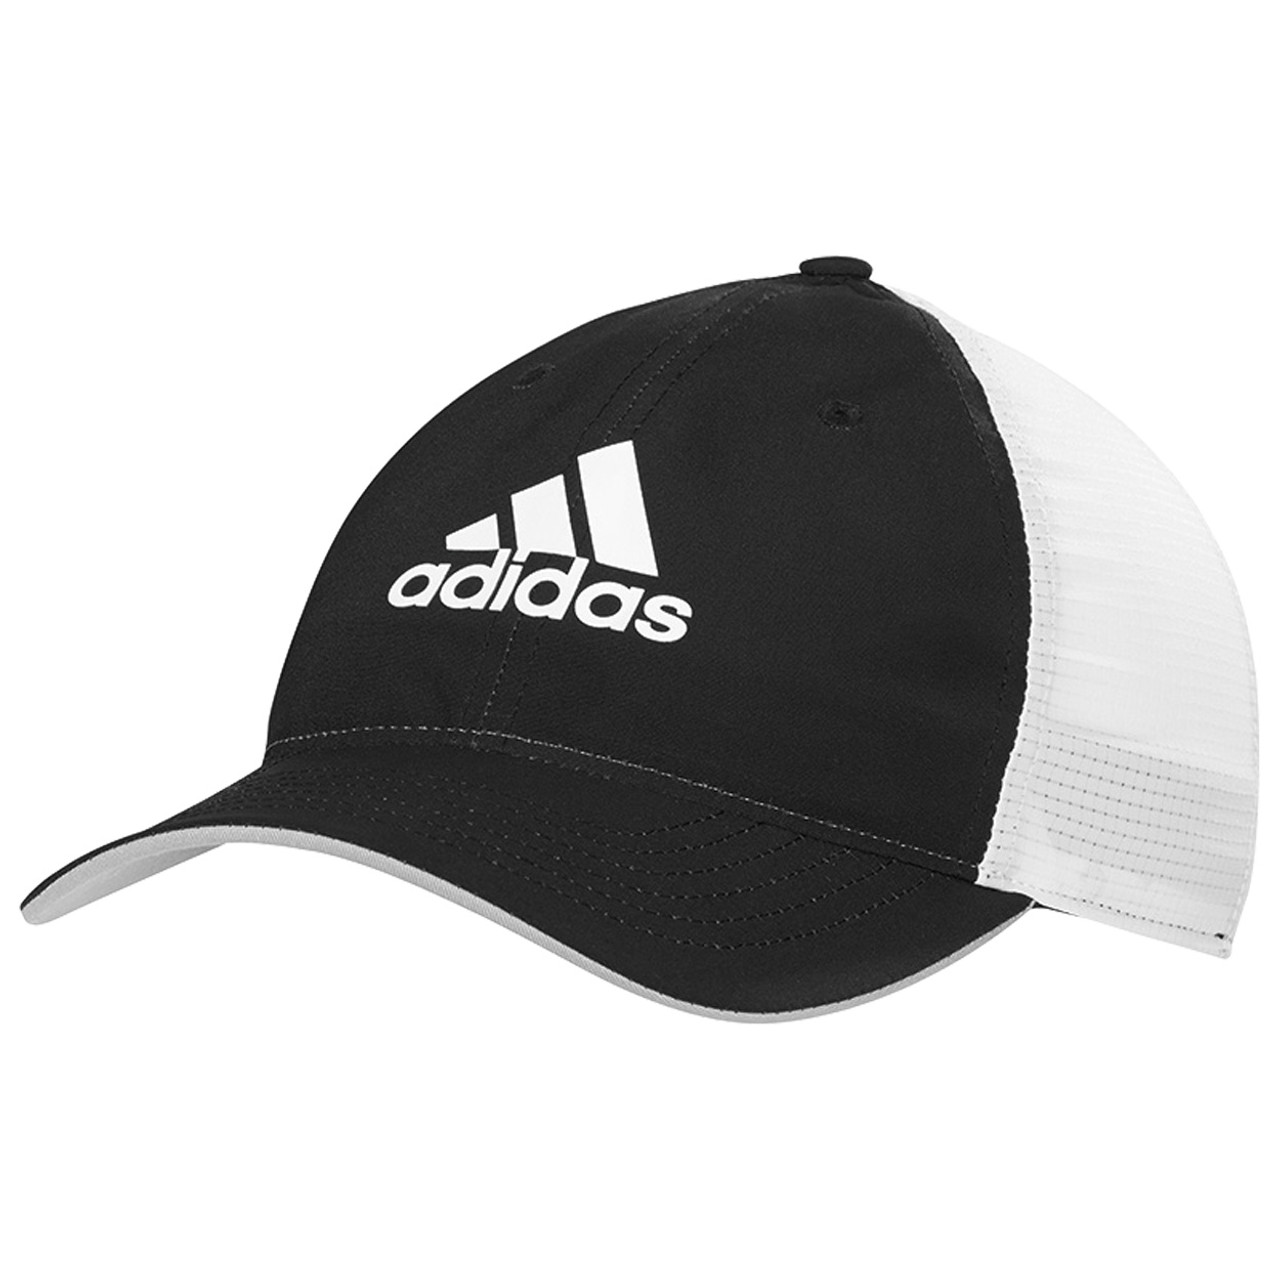 adidas flexfit golf hat